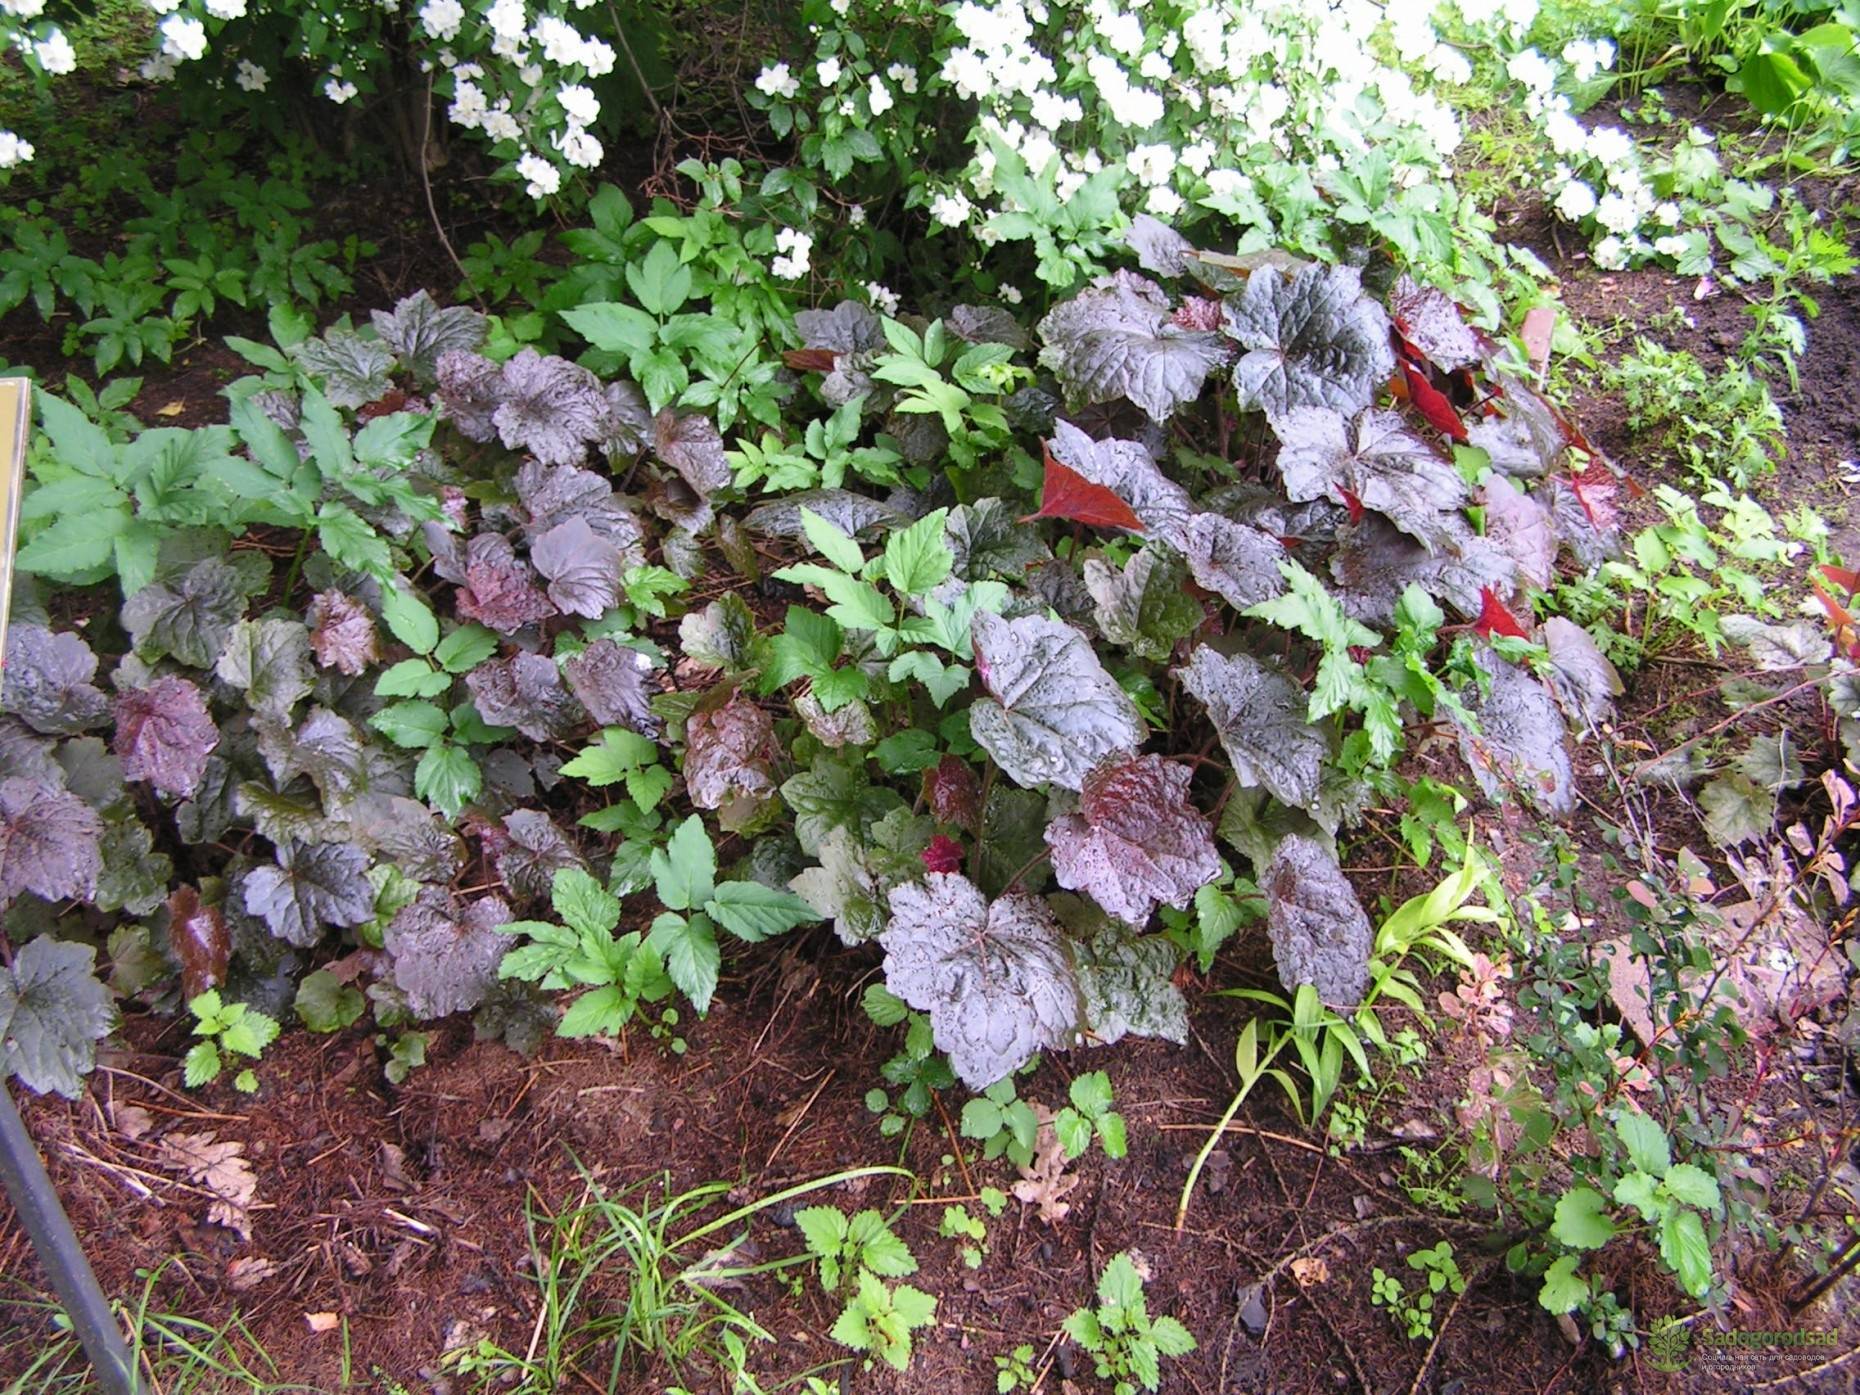 Узнайте подробнее о гейхере, особенностях ее выращивания в условиях домашнего сада